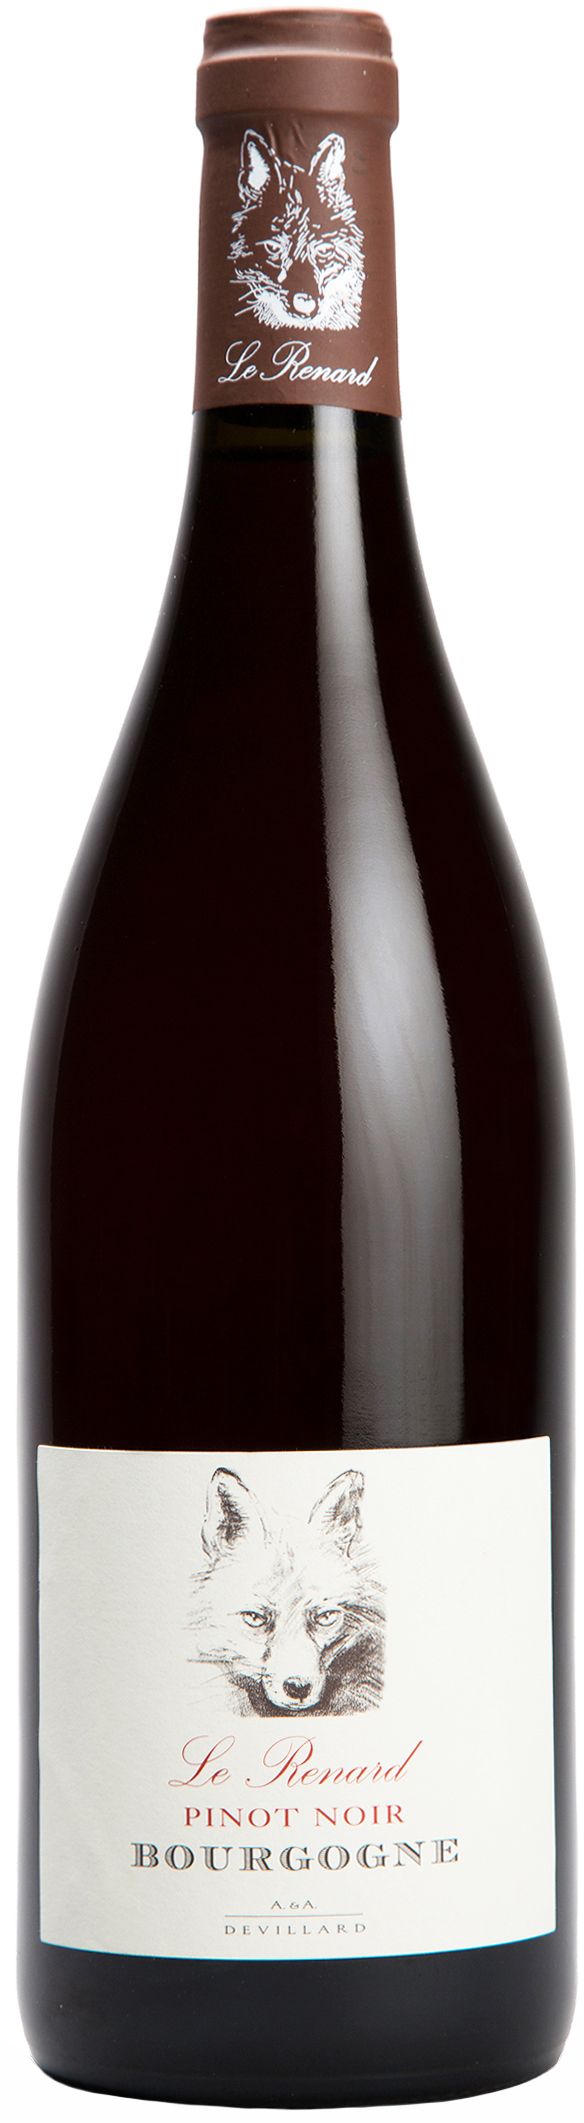 Chateau De Chamirey, Le Renard Pinot Noir Bourgogne, 2015